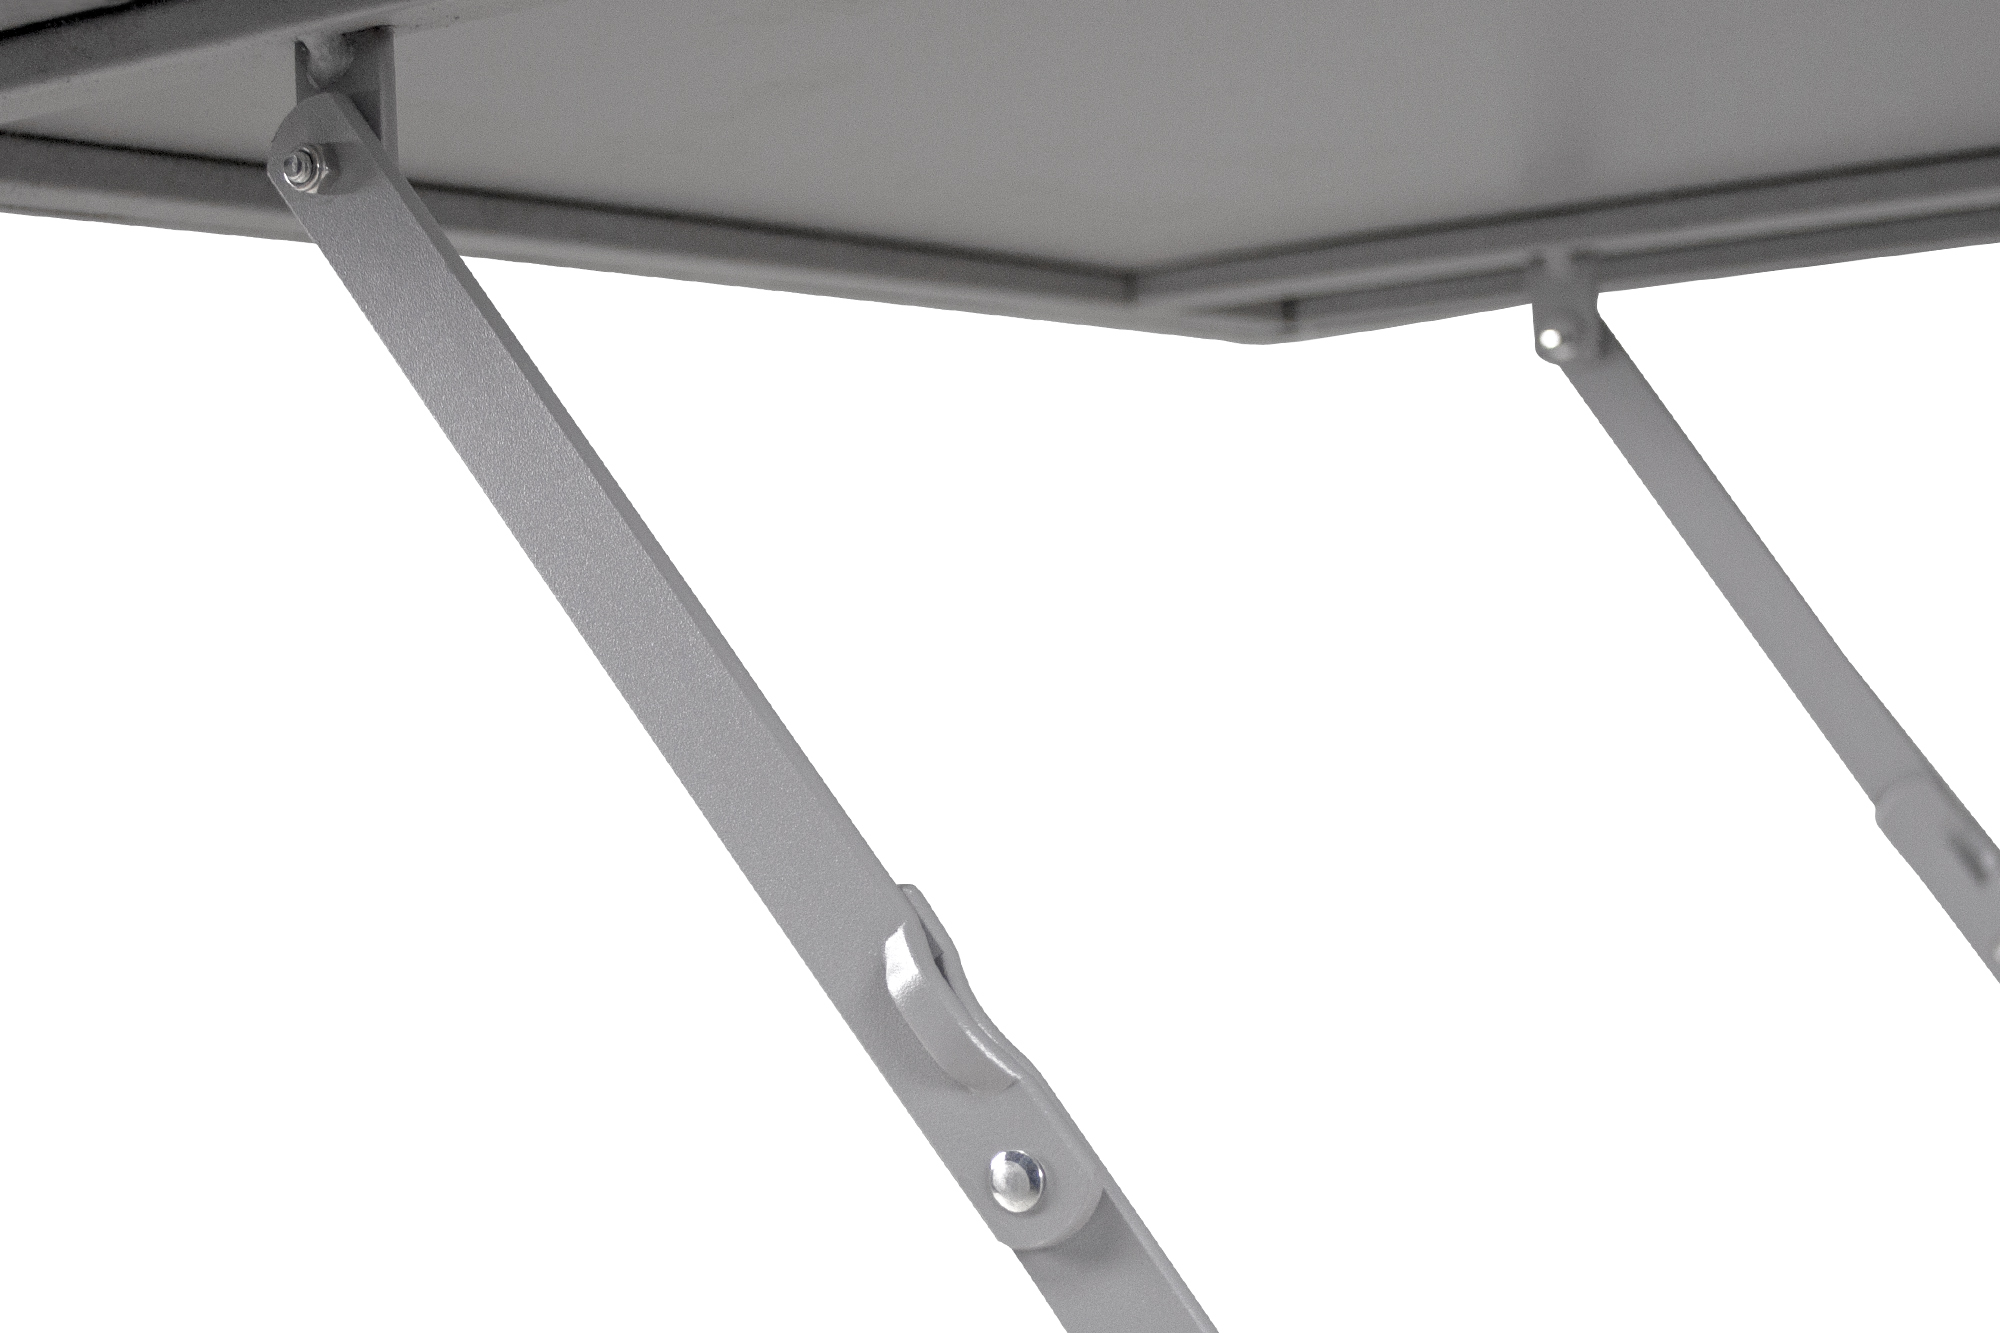 Tavolo pieghevole in metallo, tavolo richiudibile 70x70 mod. Sorren